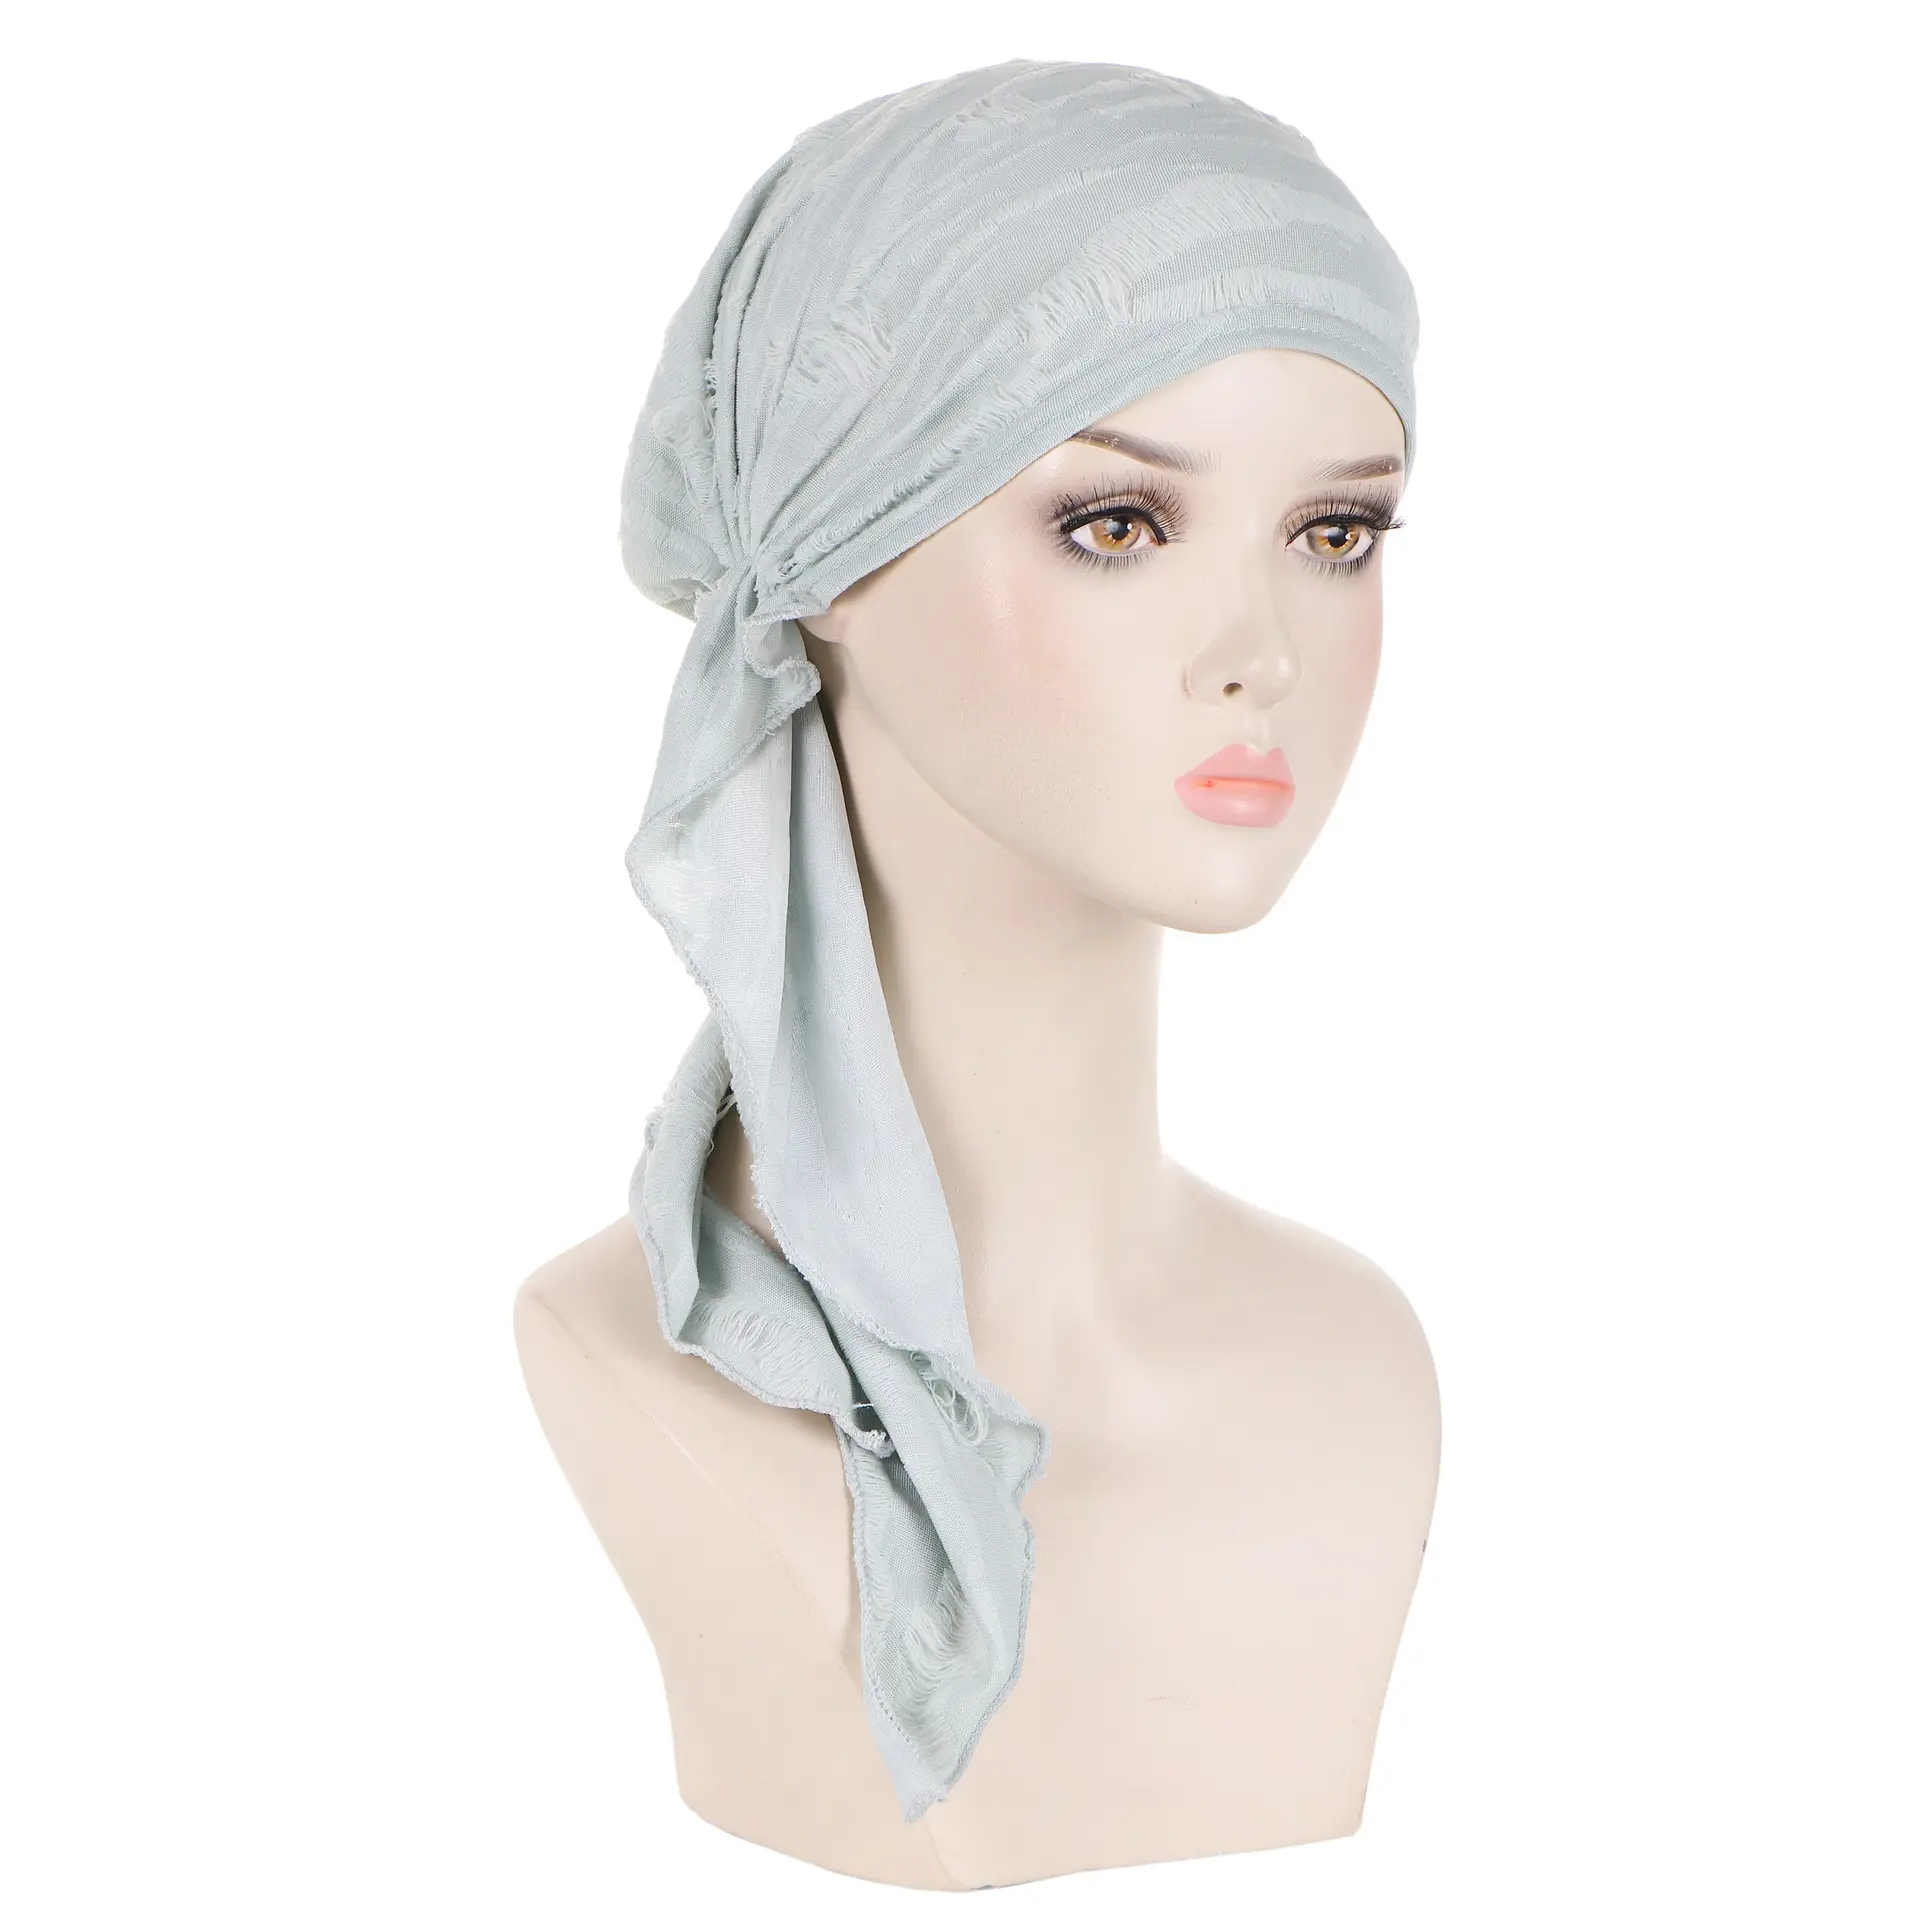 Hochwertige Frauen Krebs-Hüte islamischer Hijab Federnförmig langer Schwanz ethnische Tuaban-Hüte muslimische Frauen Schal Kopftuch